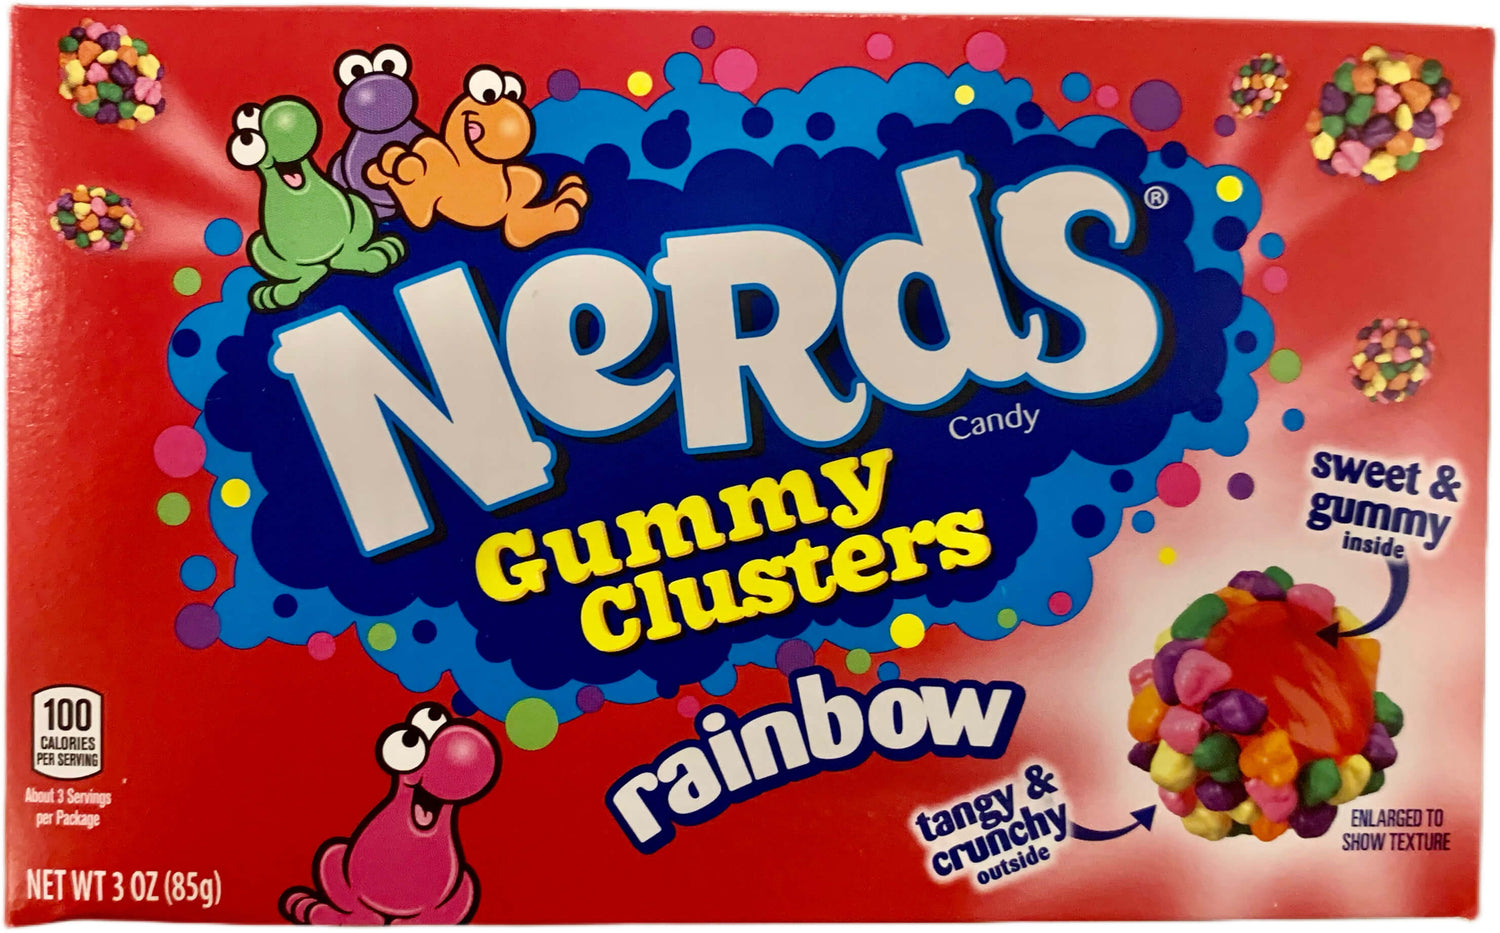 Nerds Gummy Cluster